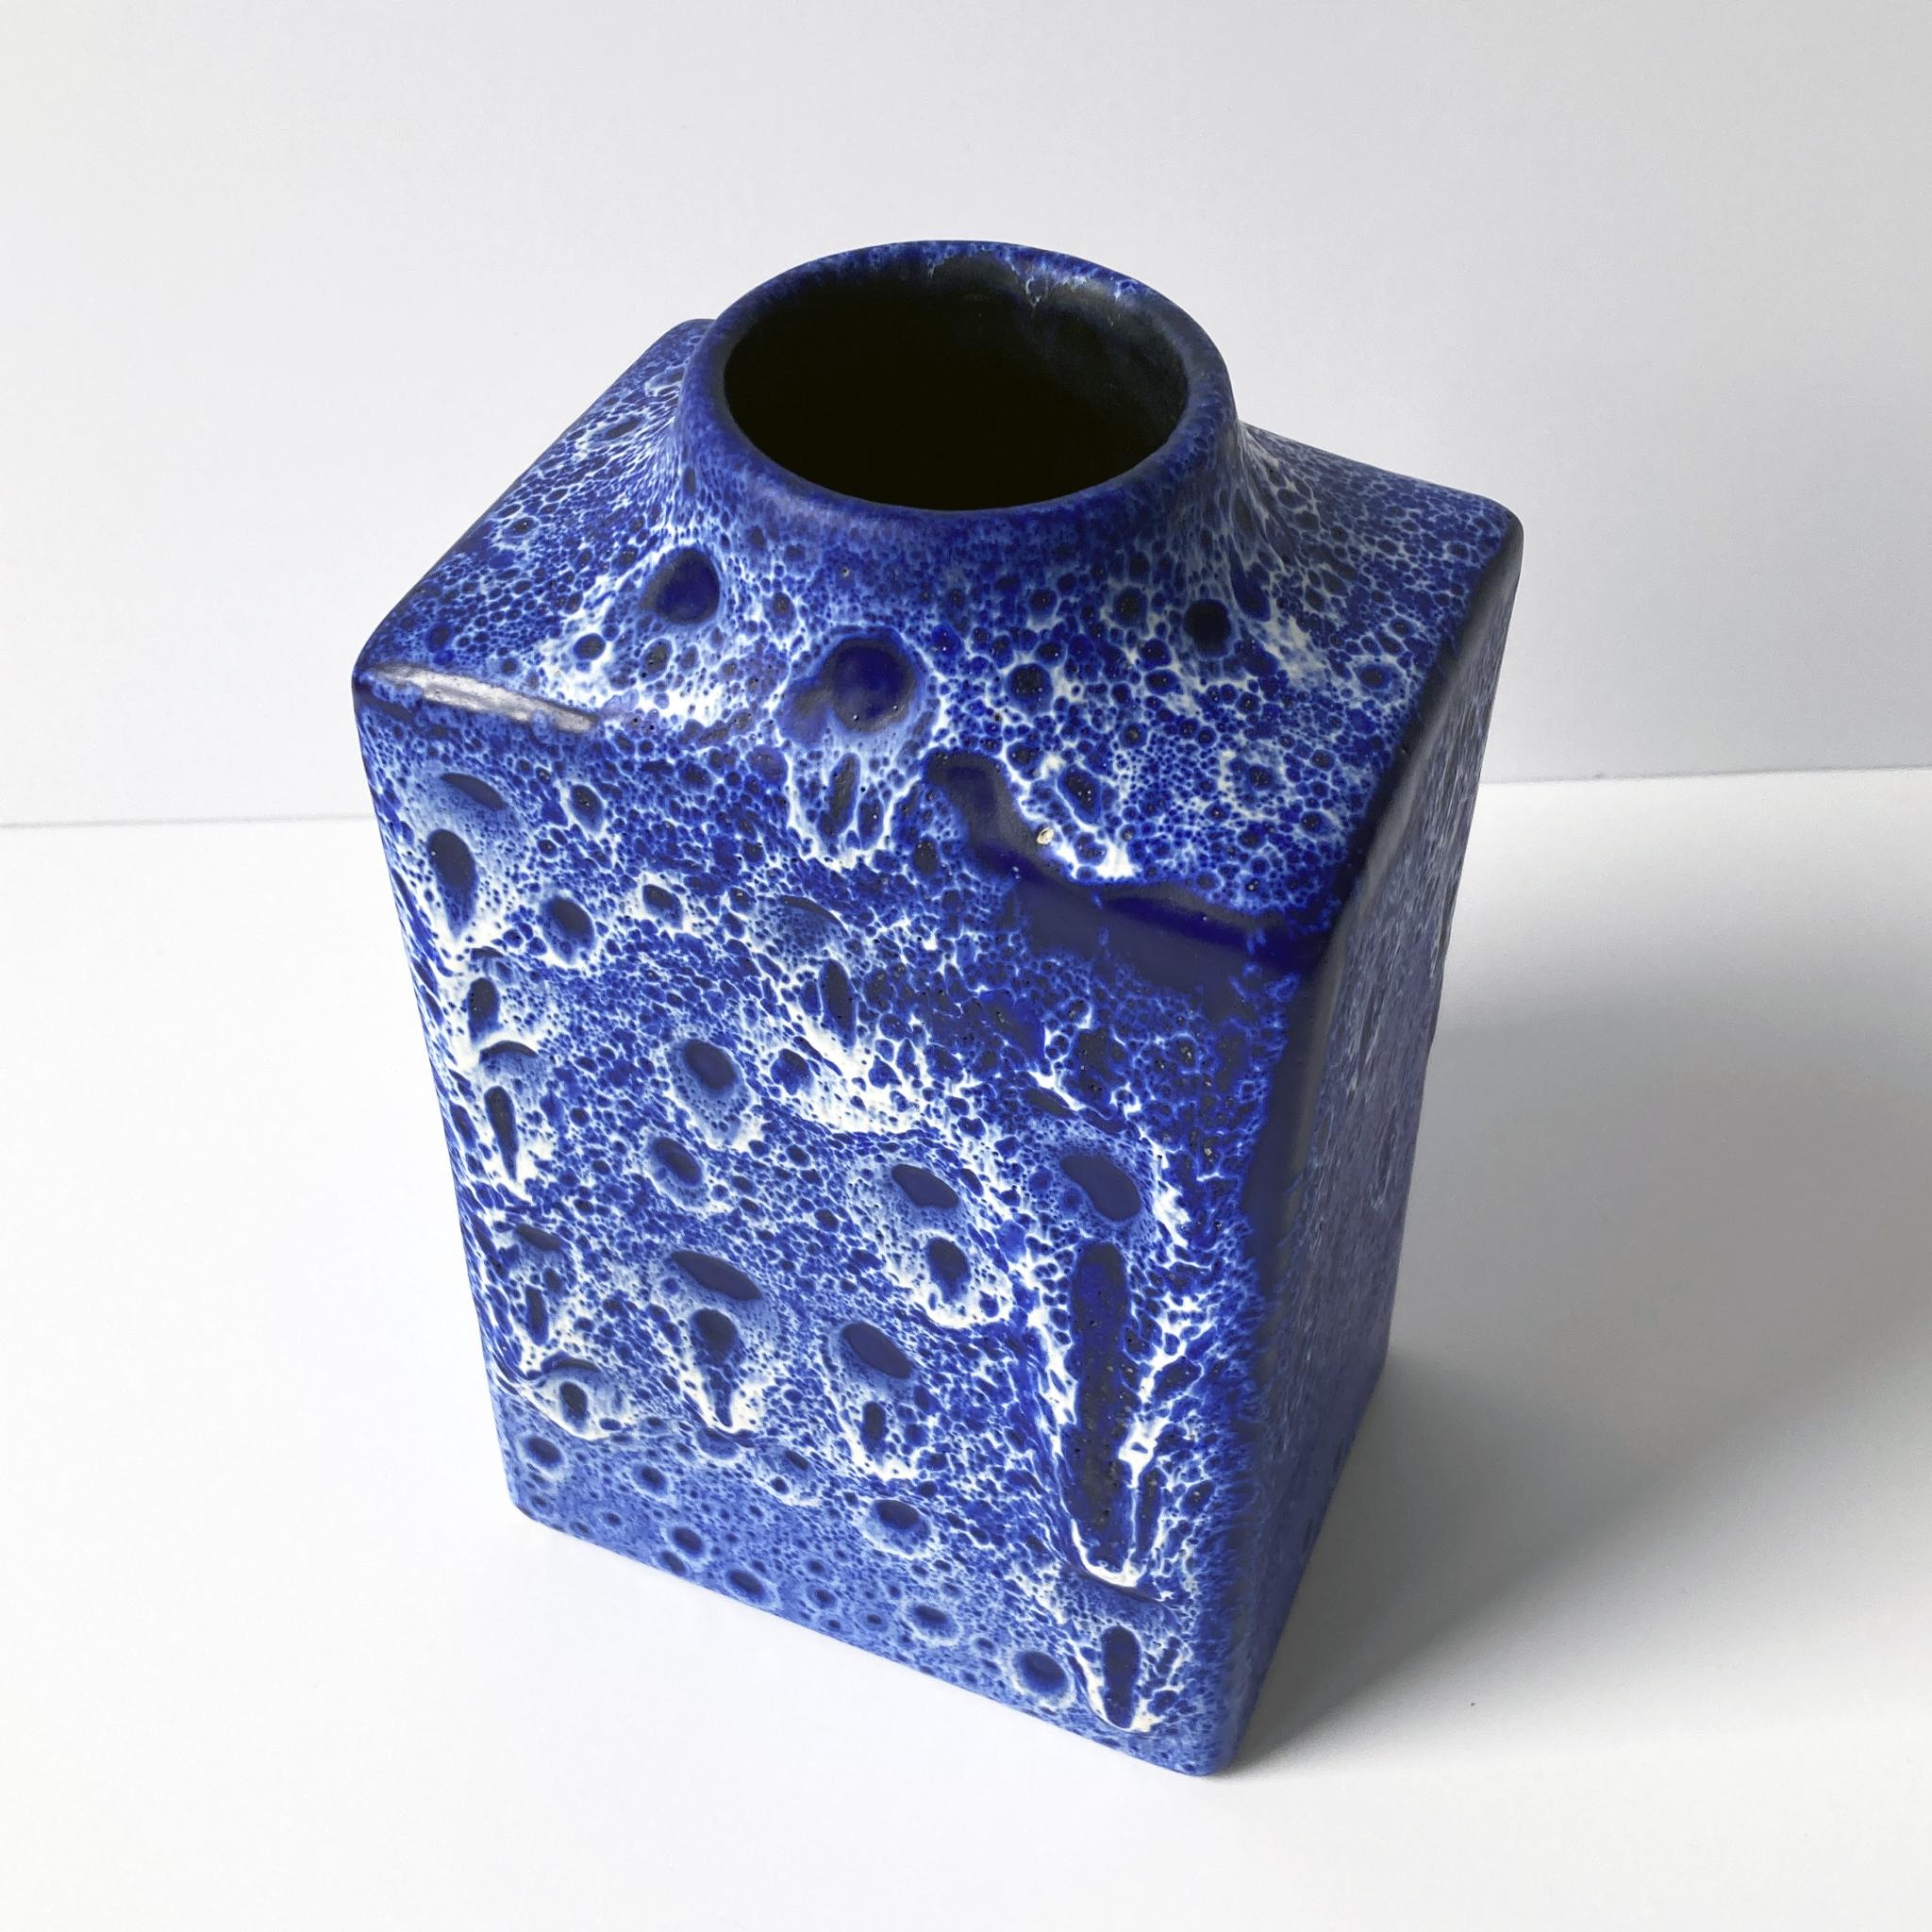 20th Century ES Keramik Blue and White Lava Vase, 1960s For Sale